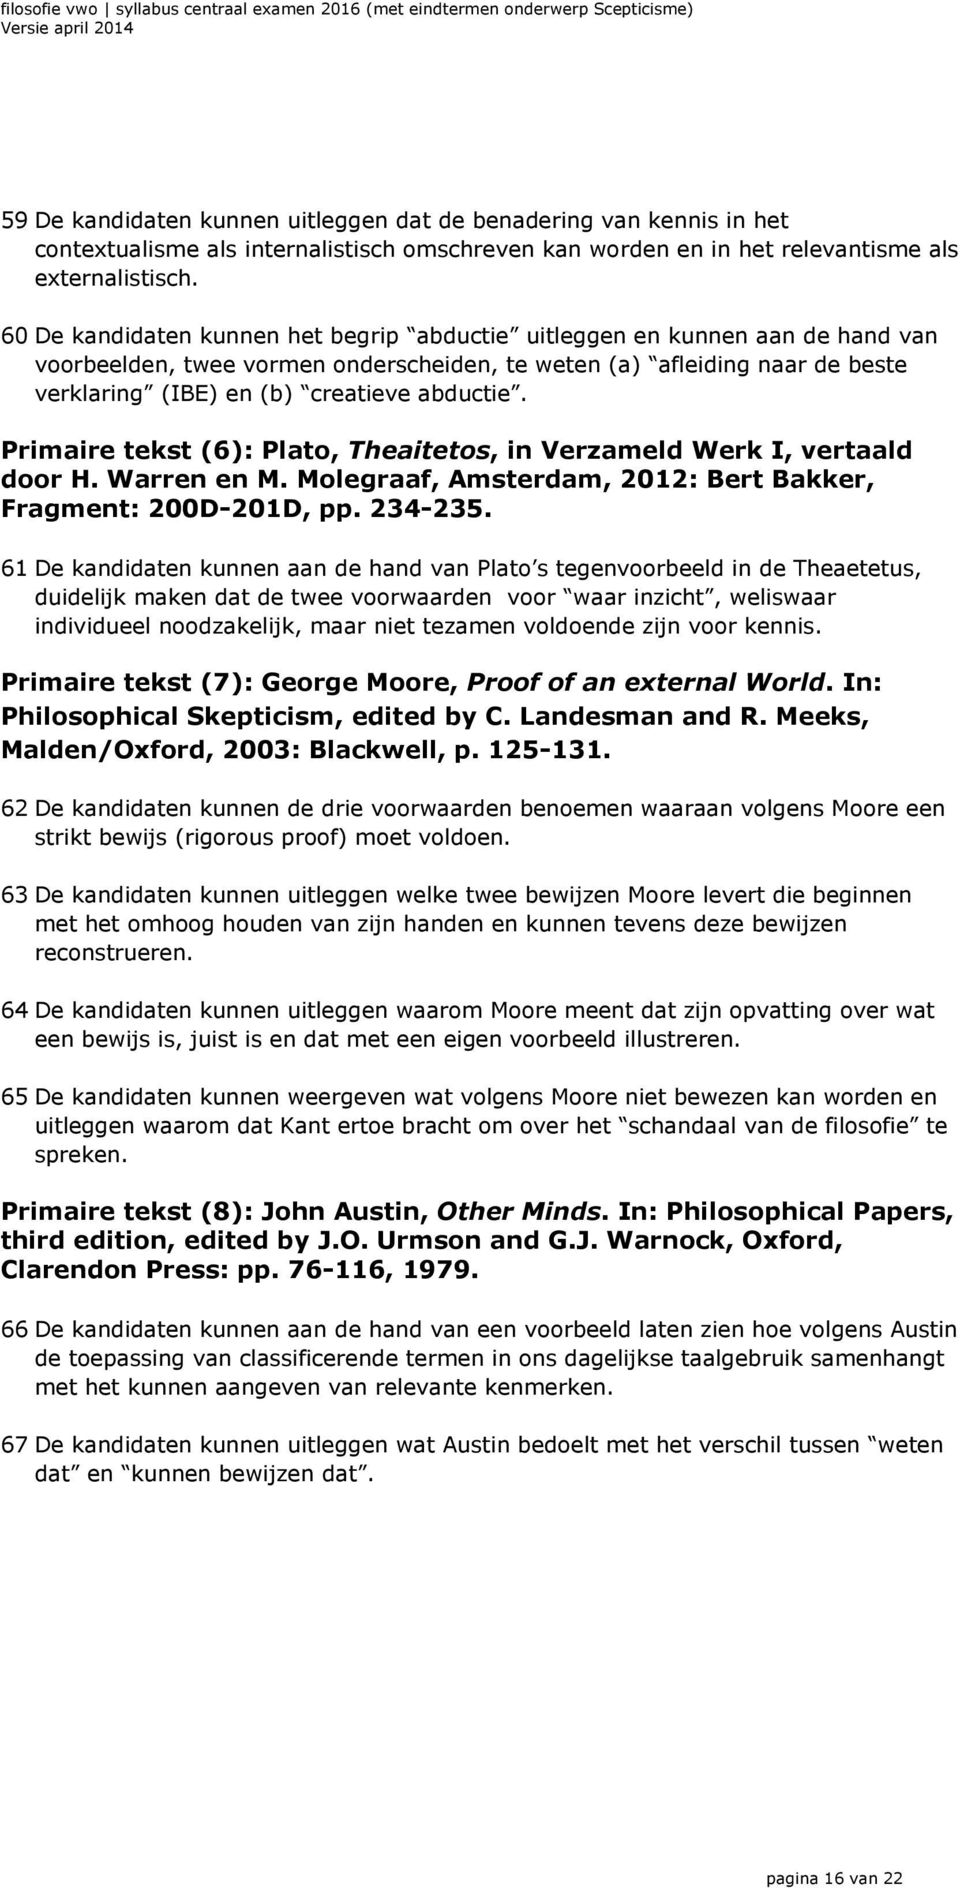 Primaire tekst (6): Plato, Theaitetos, in Verzameld Werk I, vertaald door H. Warren en M. Molegraaf, Amsterdam, 2012: Bert Bakker, Fragment: 200D-201D, pp. 234-235.